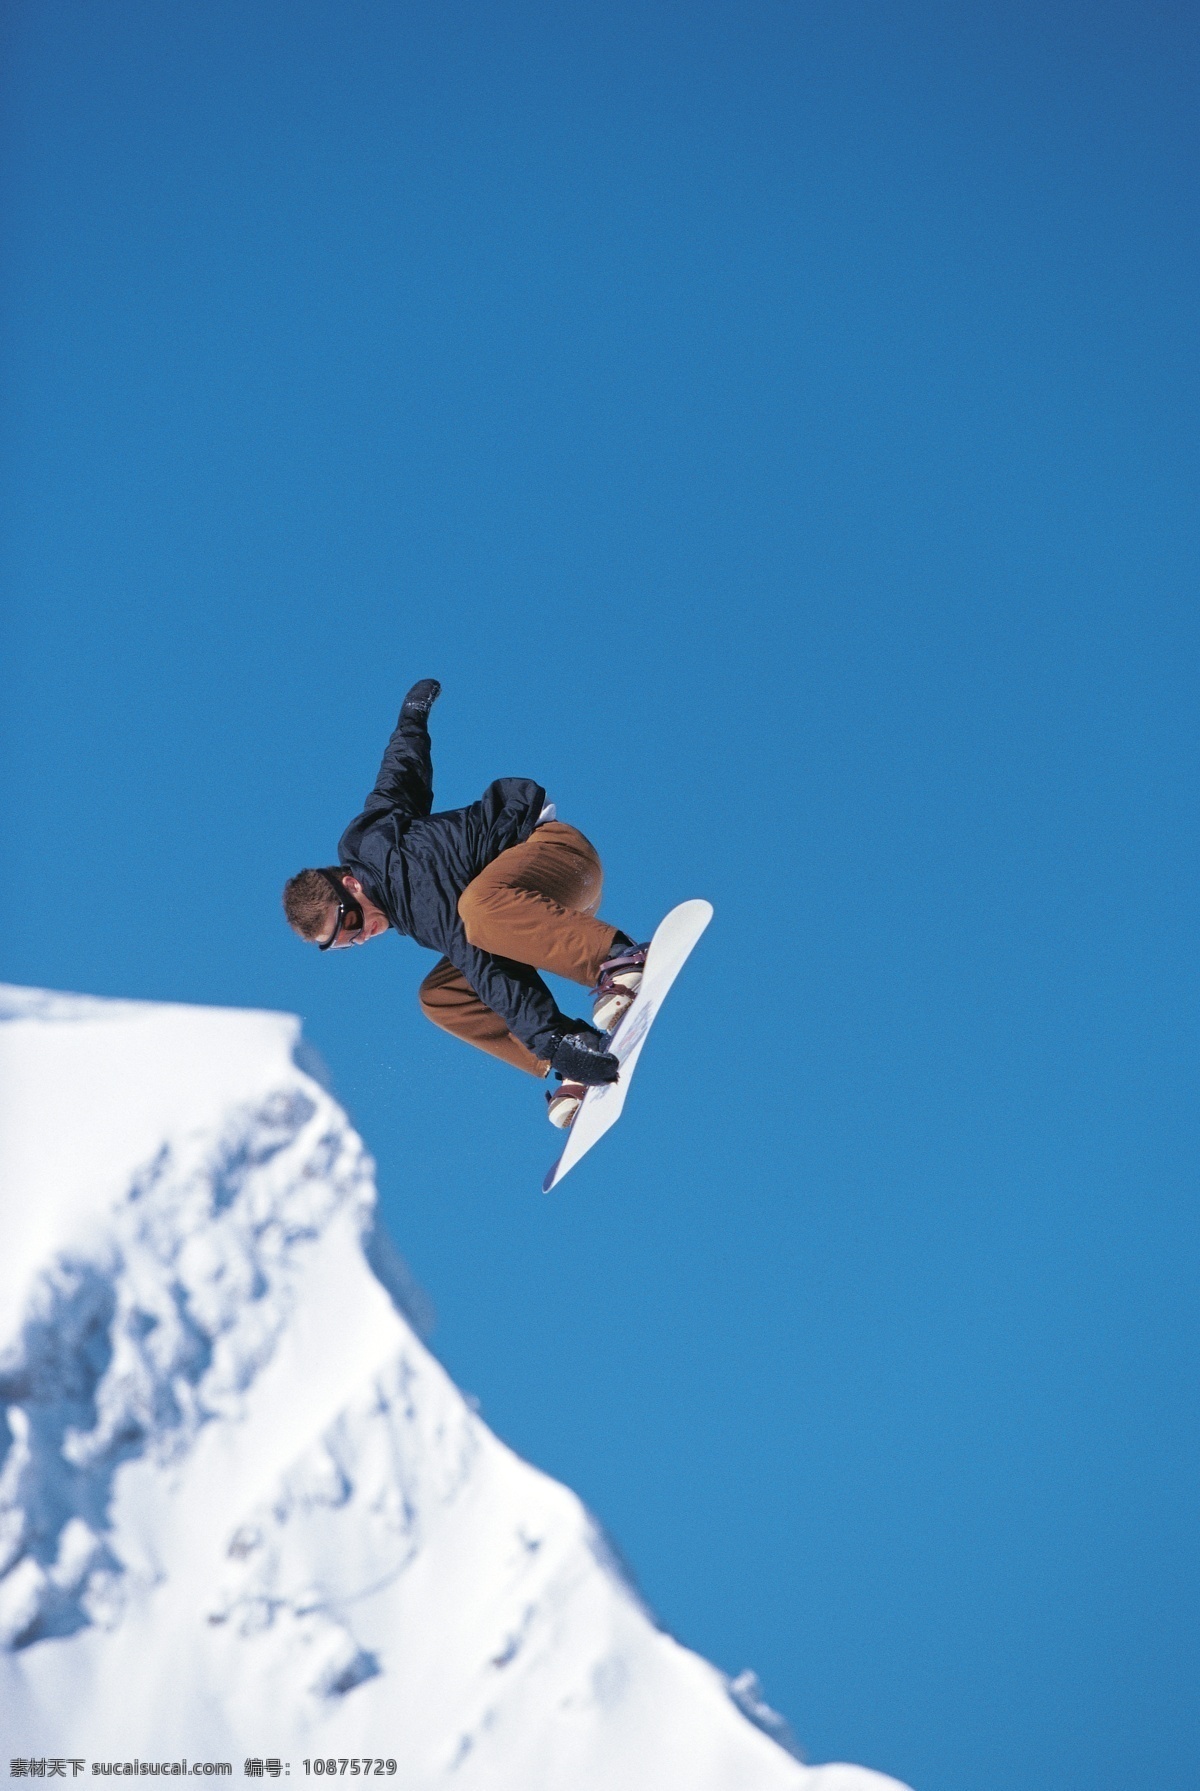 腾空 跳跃 滑雪 运动员 高清 雪地运动 划雪运动 极限运动 体育项目 飞跃 运动图片 生活百科 雪山 风景 摄影图片 高清图片 体育运动 蓝色